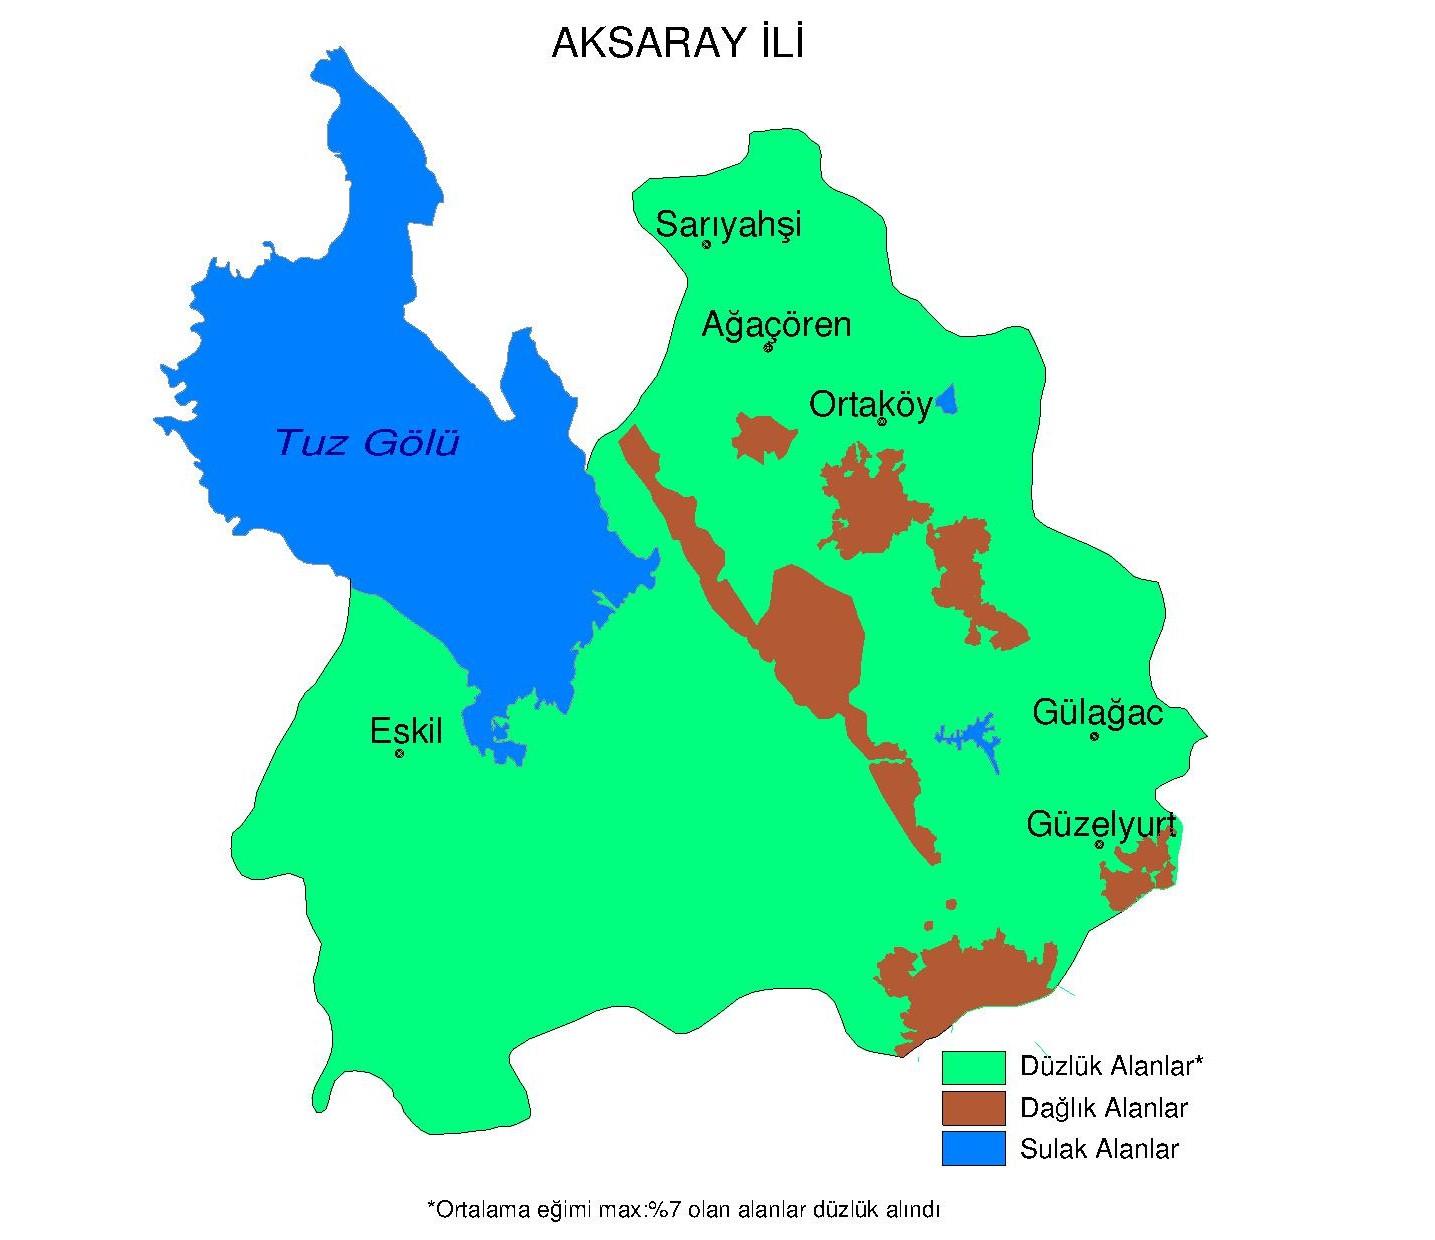 1.2.1. Aksaray Aksaray ilinin yüzölçümü 7.966 km² olup, KOP Bölgesi illeri arasında alan büyüklüğü olarak 3. sırada yer almaktadır. Nüfusu 382.806 kişidir. Aksaray ilinin 796.600 ha alanının, 653.